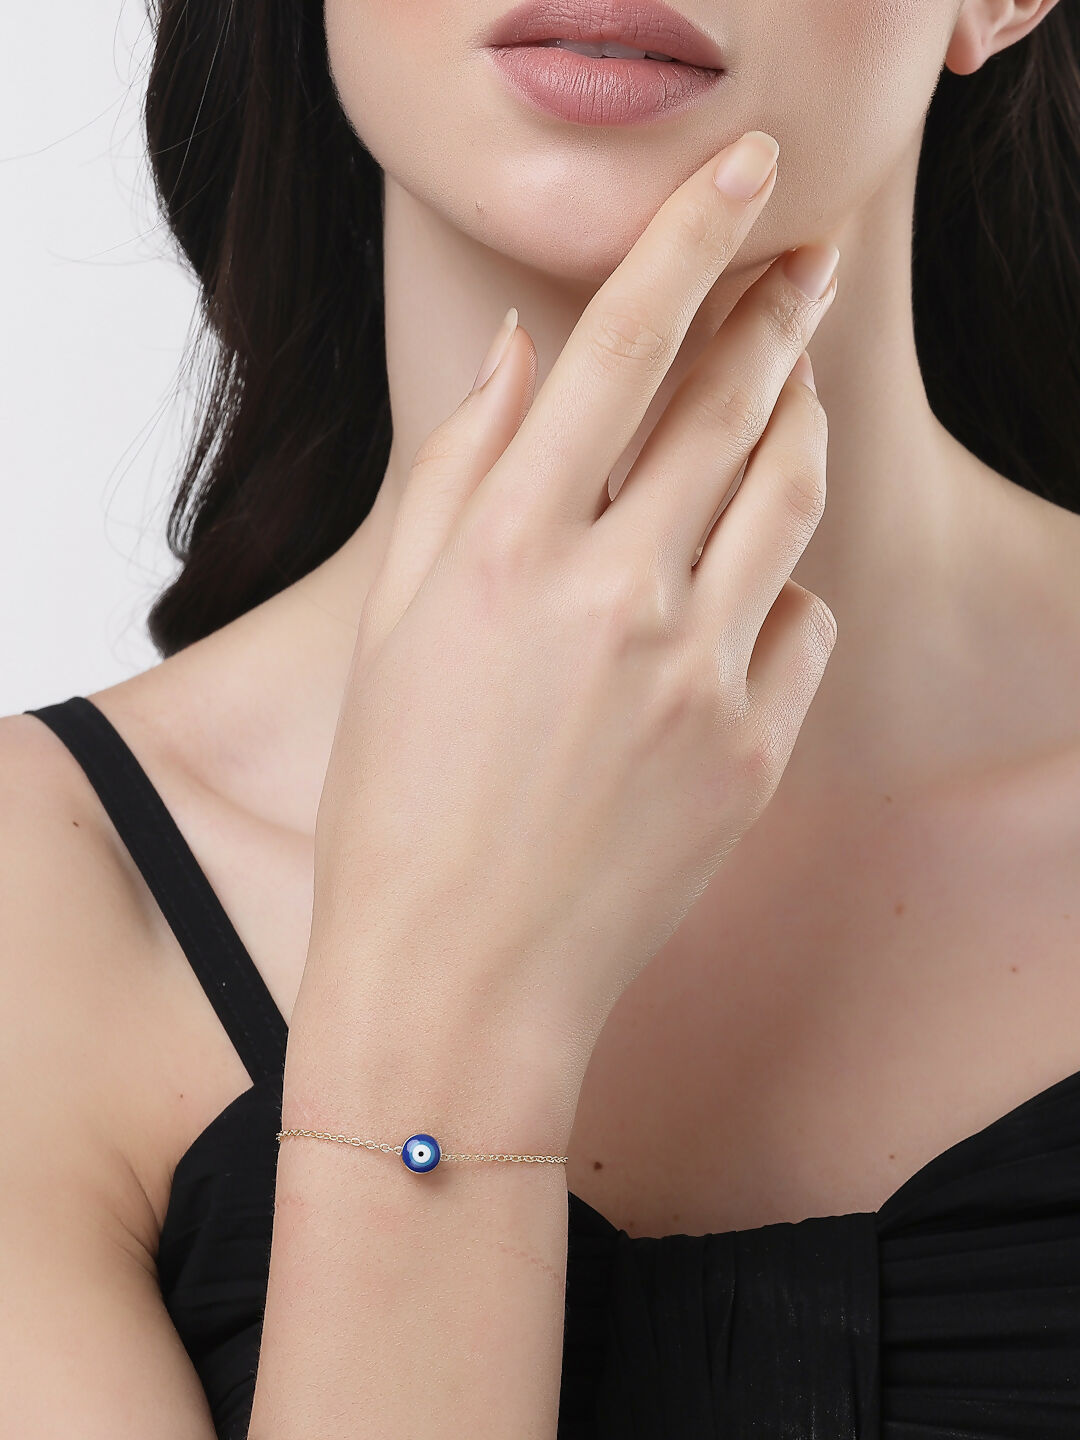 NVR Women Gold-Toned Blue Evil Eye Charm Bracelet - Distacart